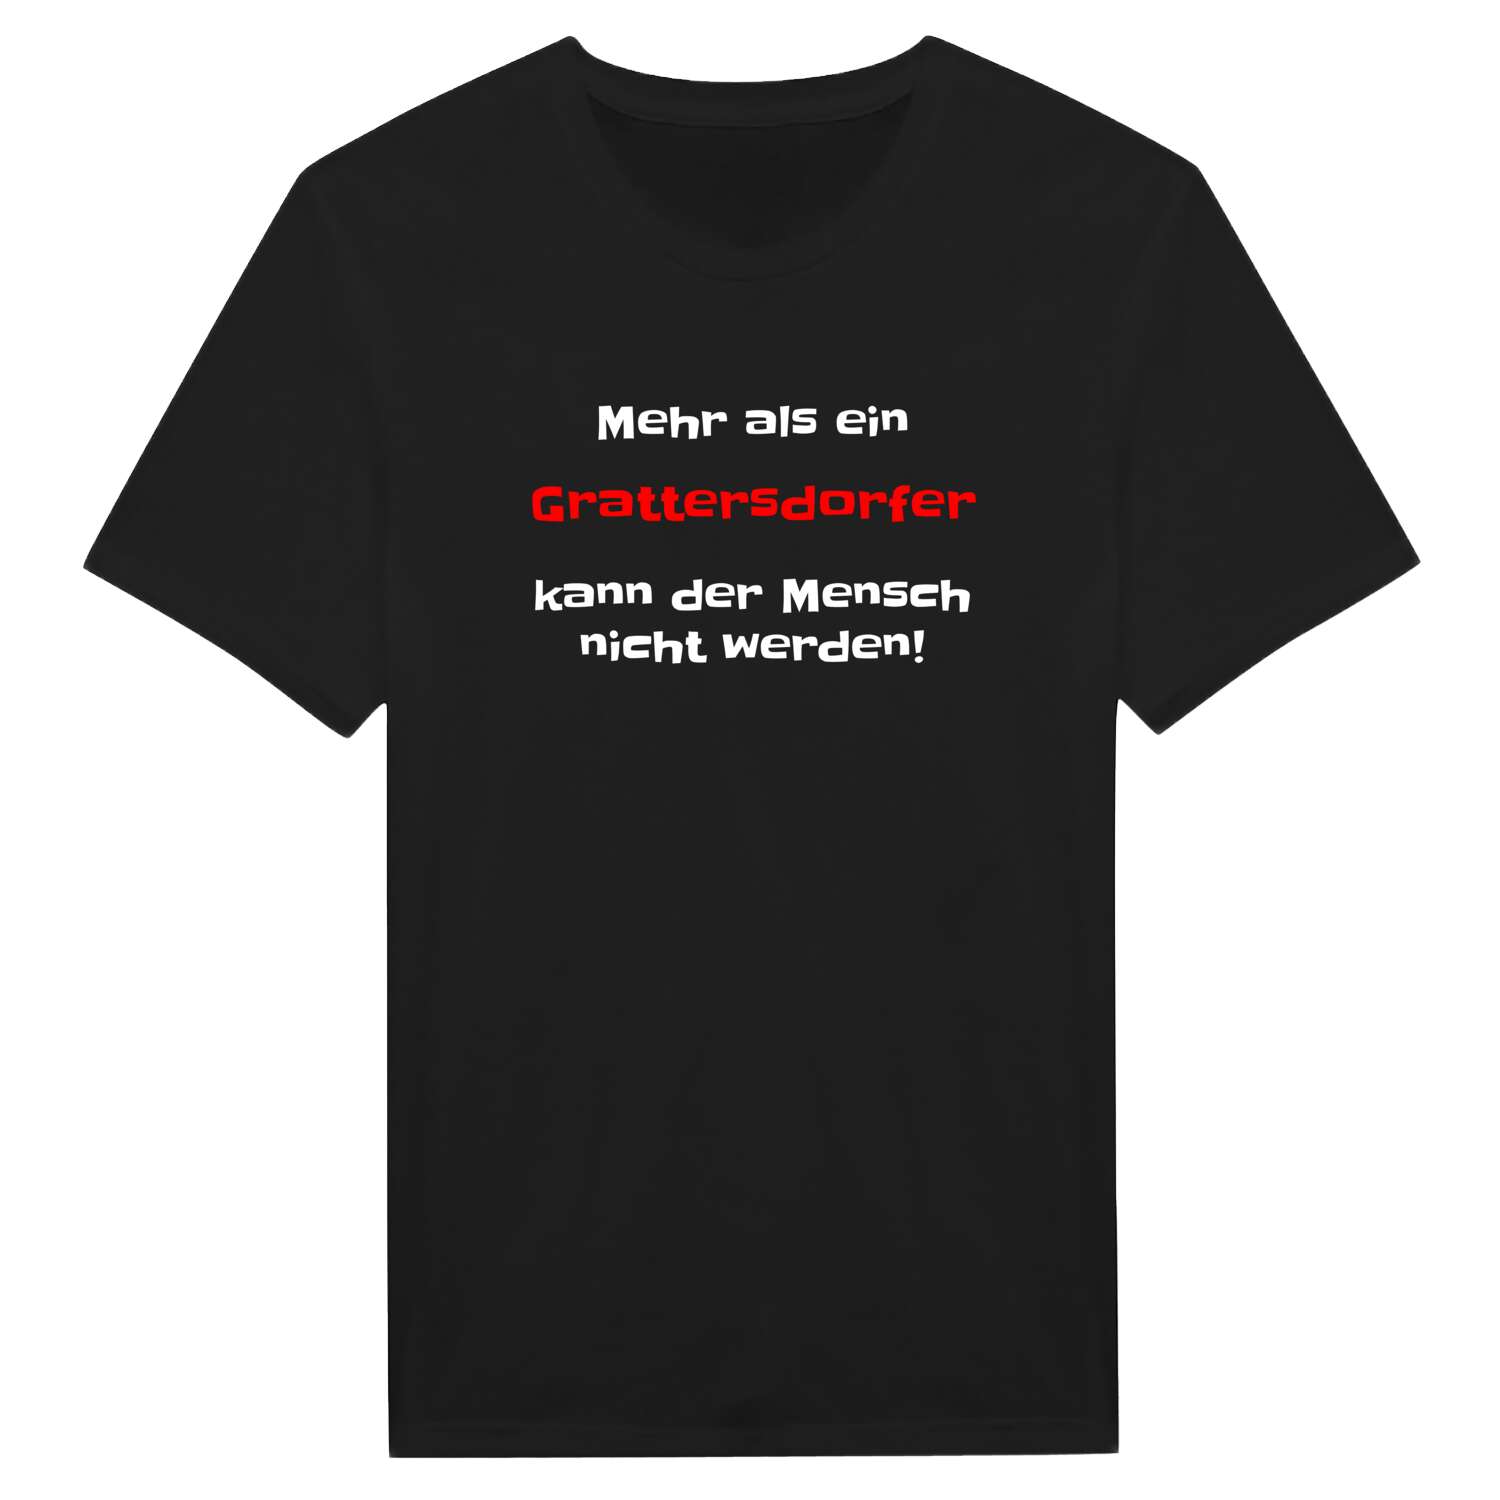 Grattersdorf T-Shirt »Mehr als ein«